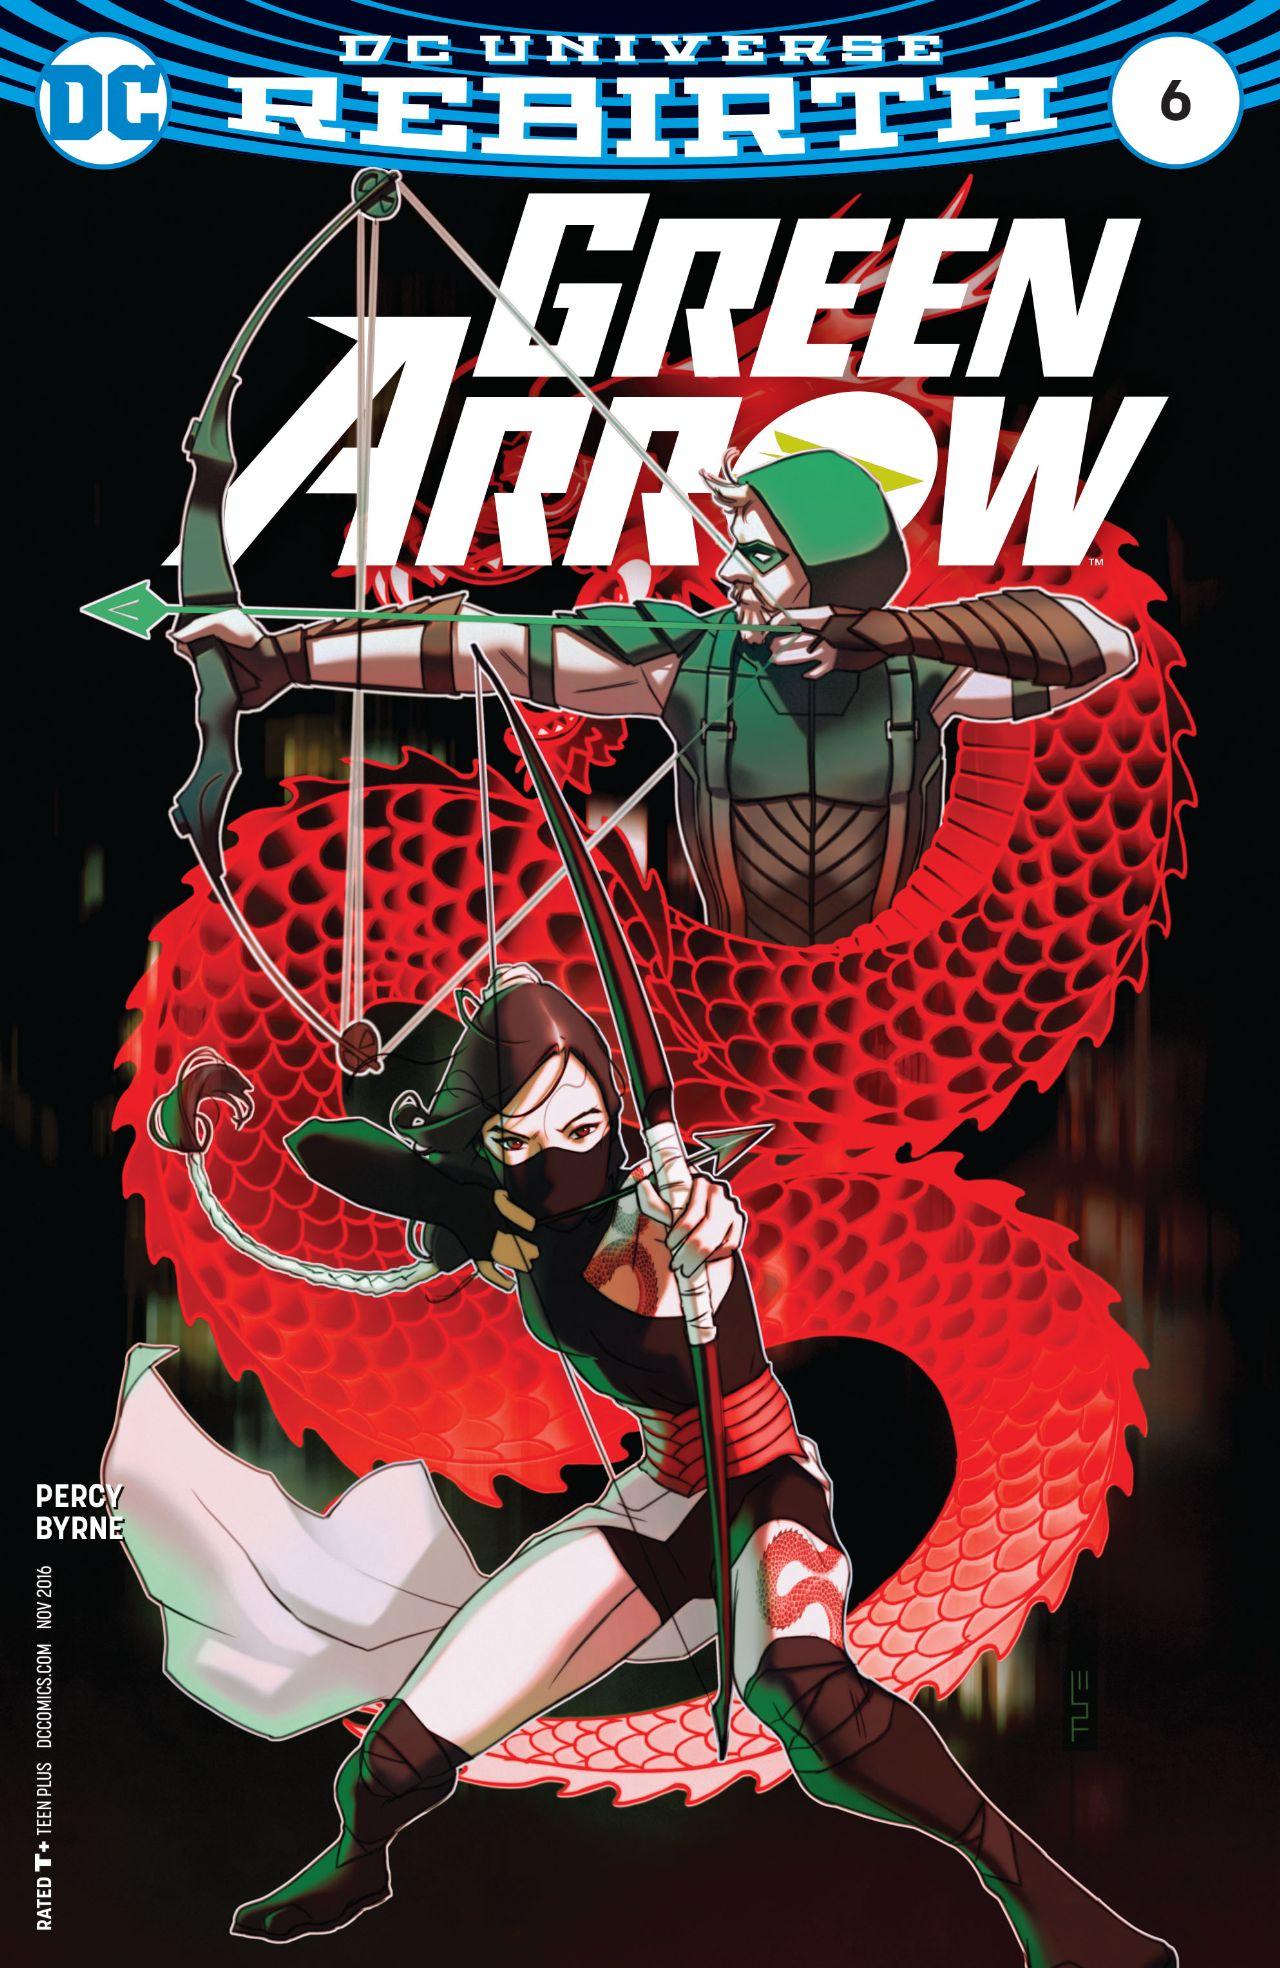 Green Arrow Vol. 6 #6